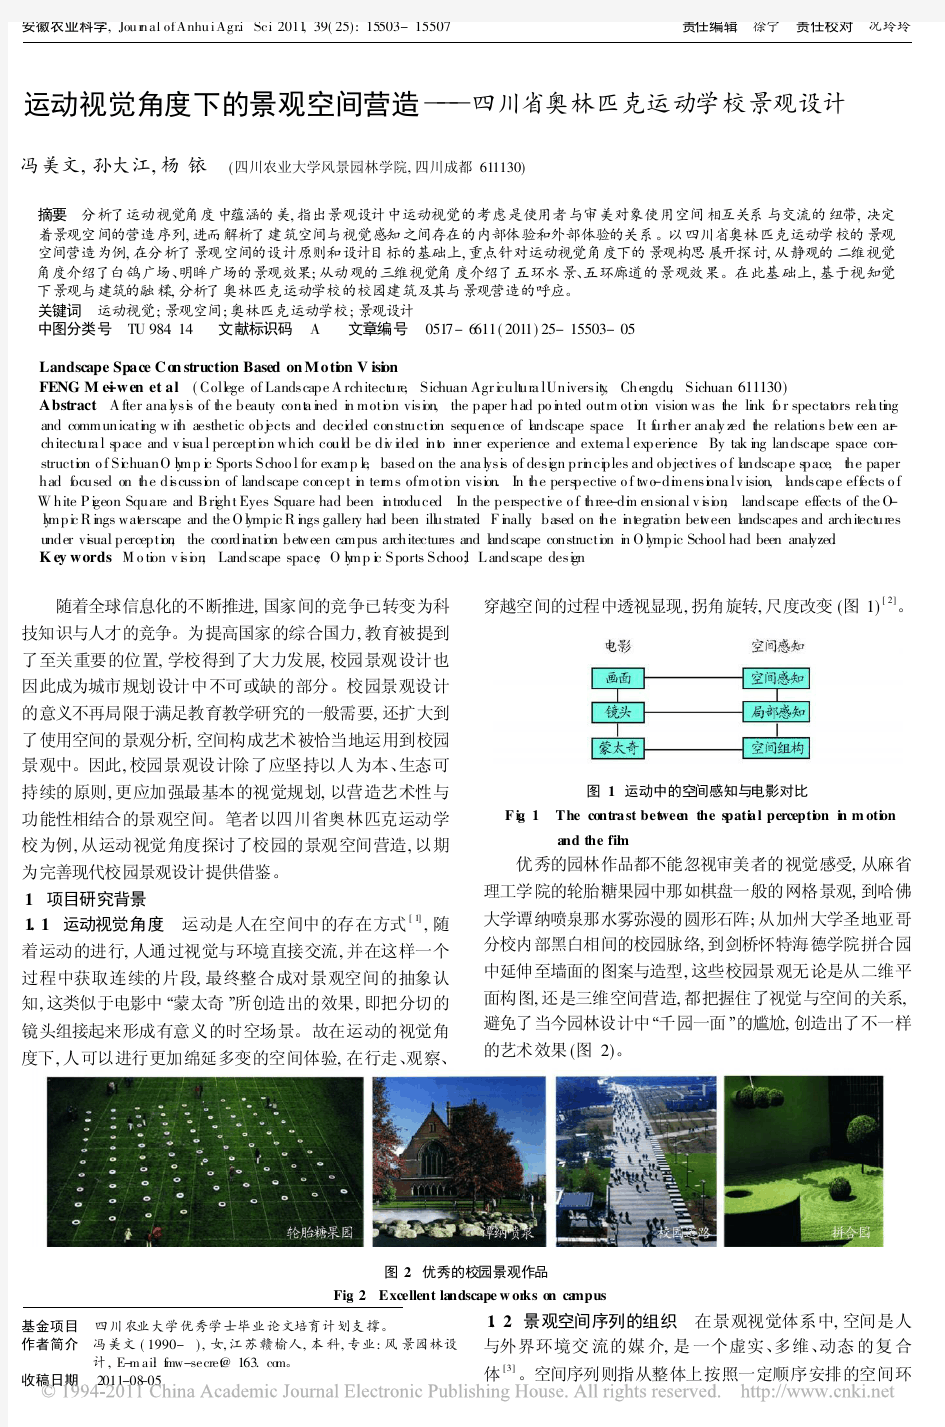 运动视觉角度下的景观空间营造_四川省奥林匹克运动学校景观设计